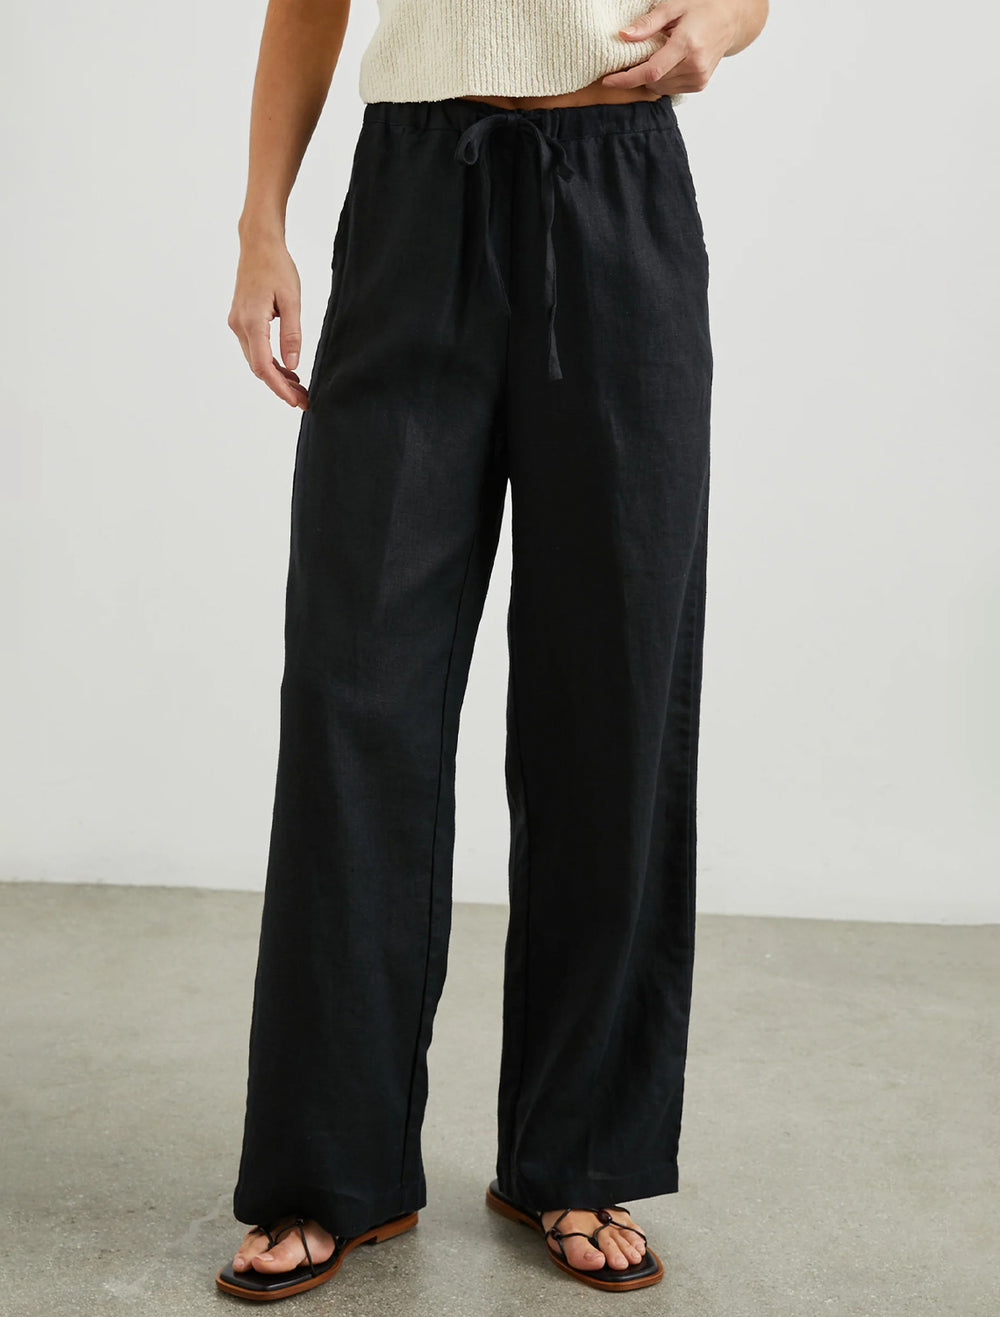 Model wearing Rails' emmie linen pants in black.